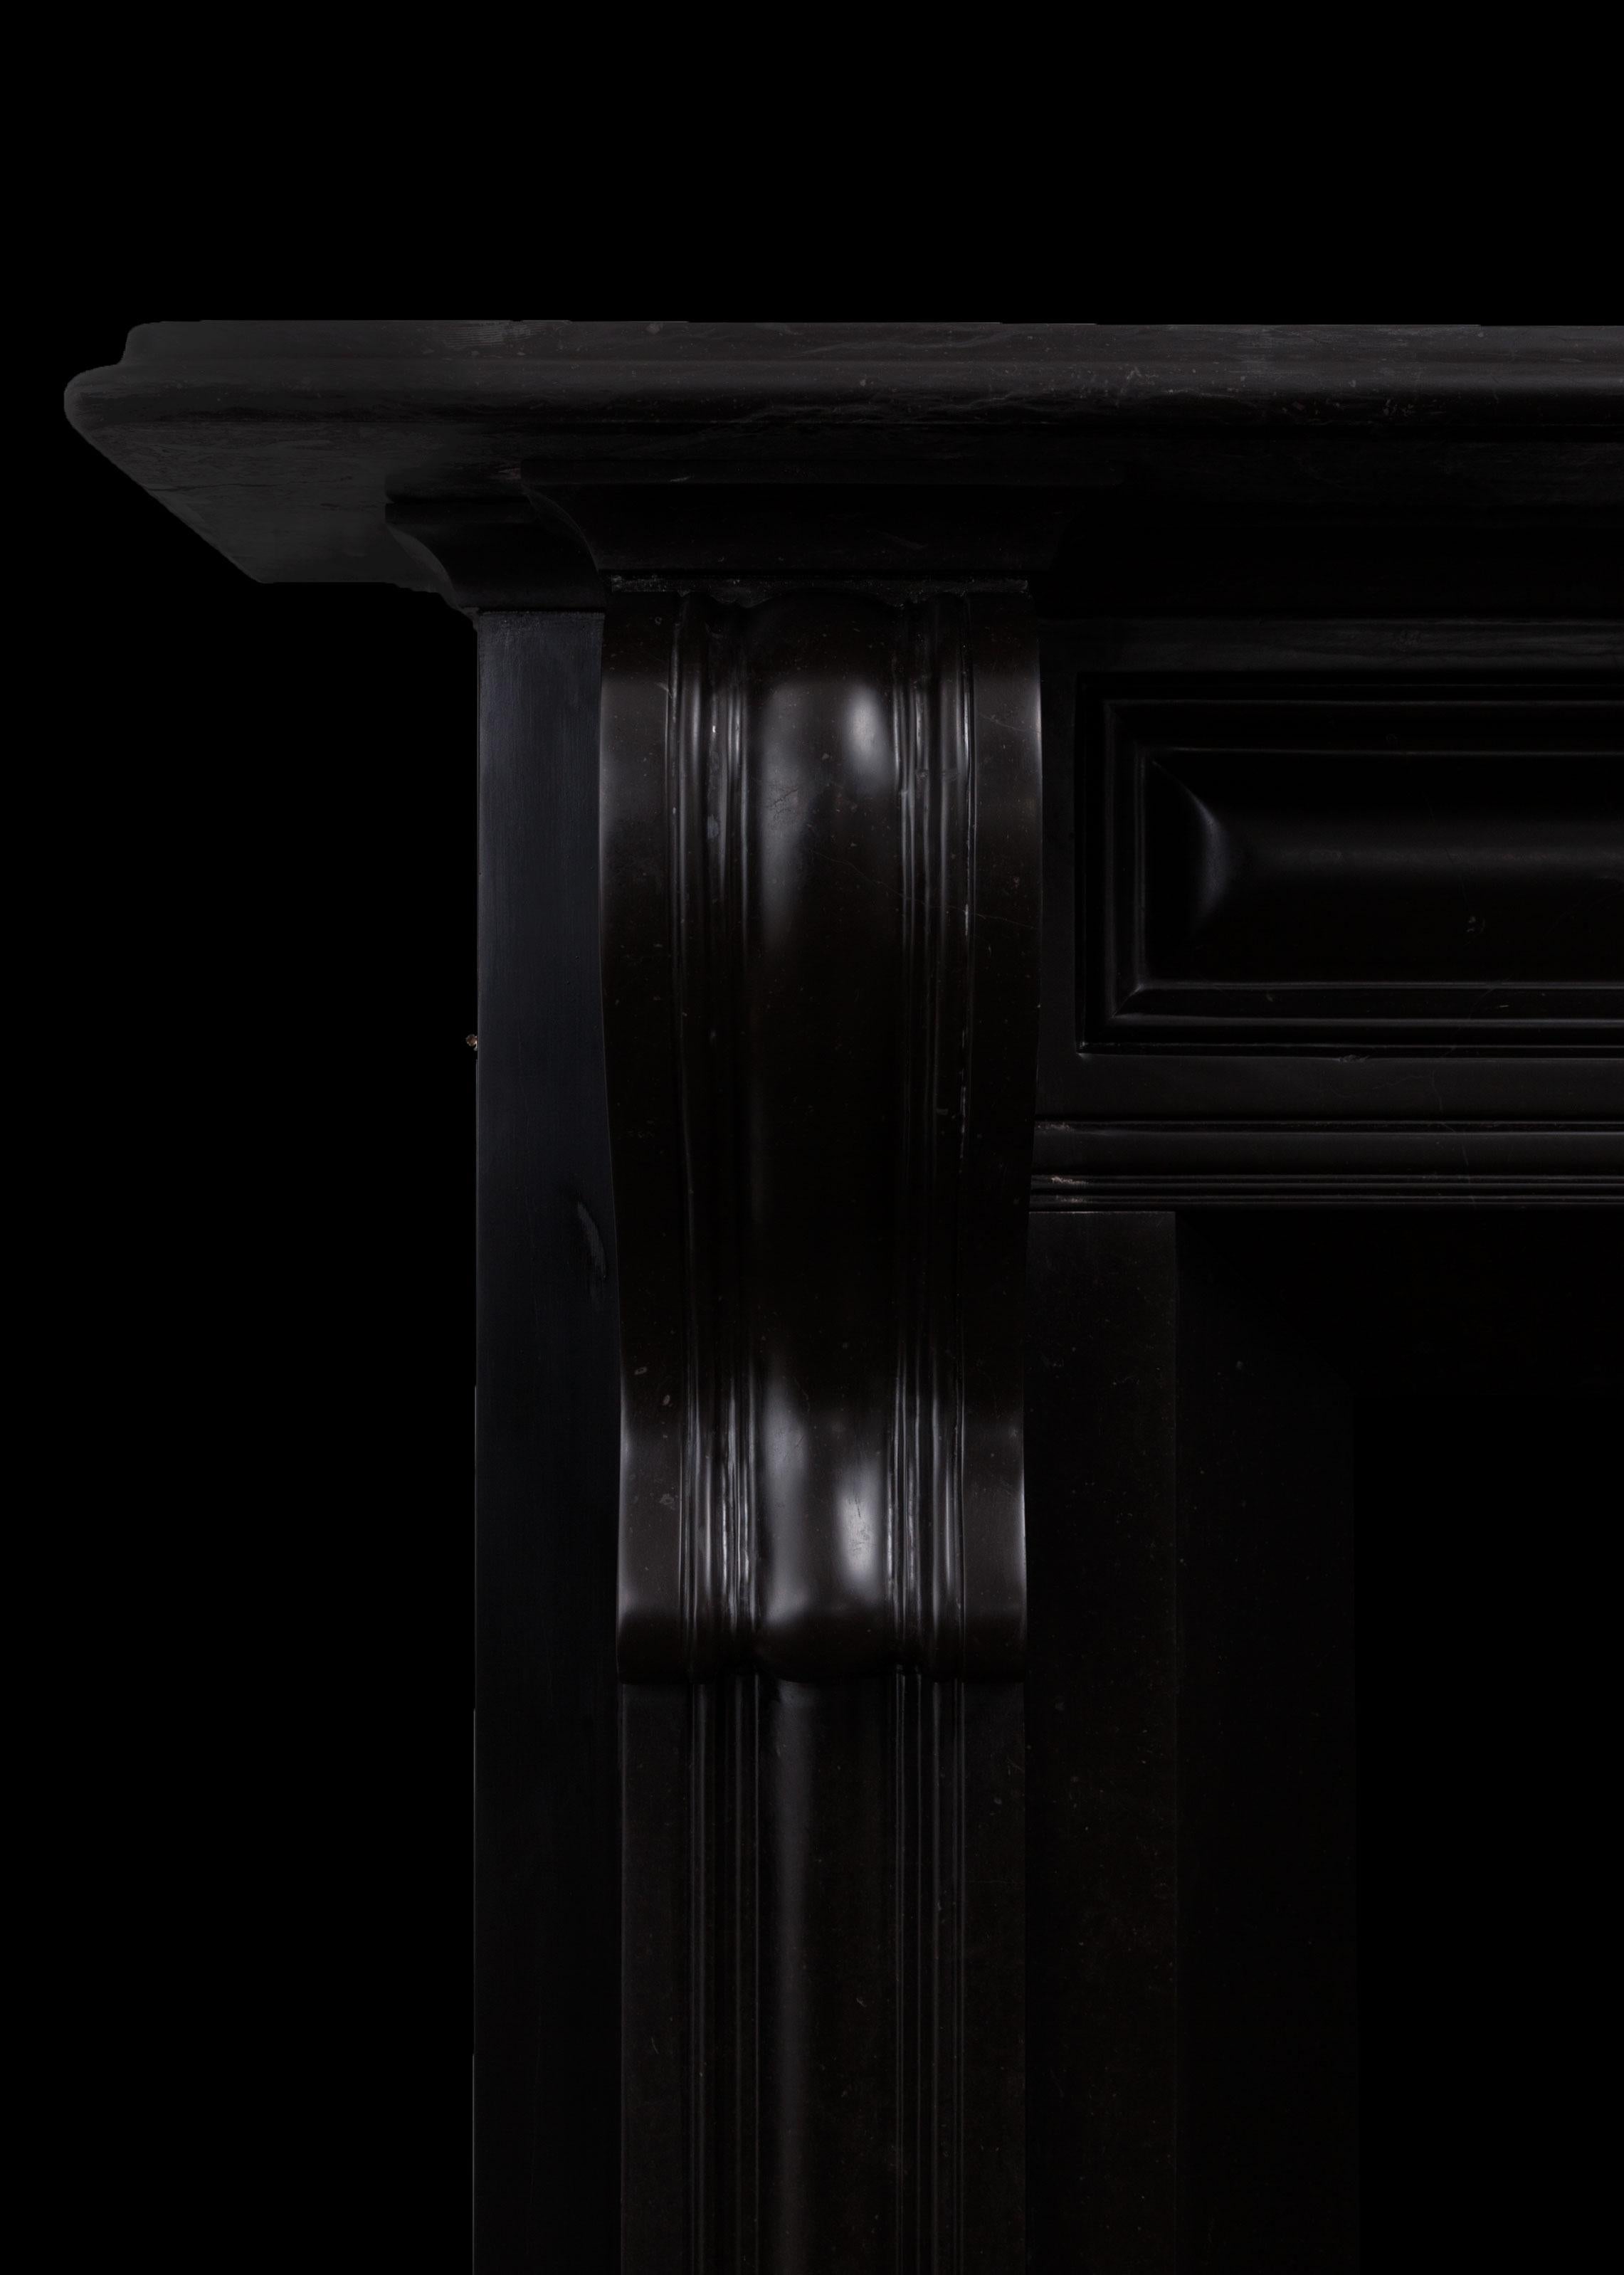 Un entourage de cheminée en marbre noir de Kilkenny.
Cette cheminée est de style Regency irlandais du début du XIXe siècle. Elle présente des panneaux moulés en coussin qui se prolongent par des corbeaux, une ouverture effilée et une profonde